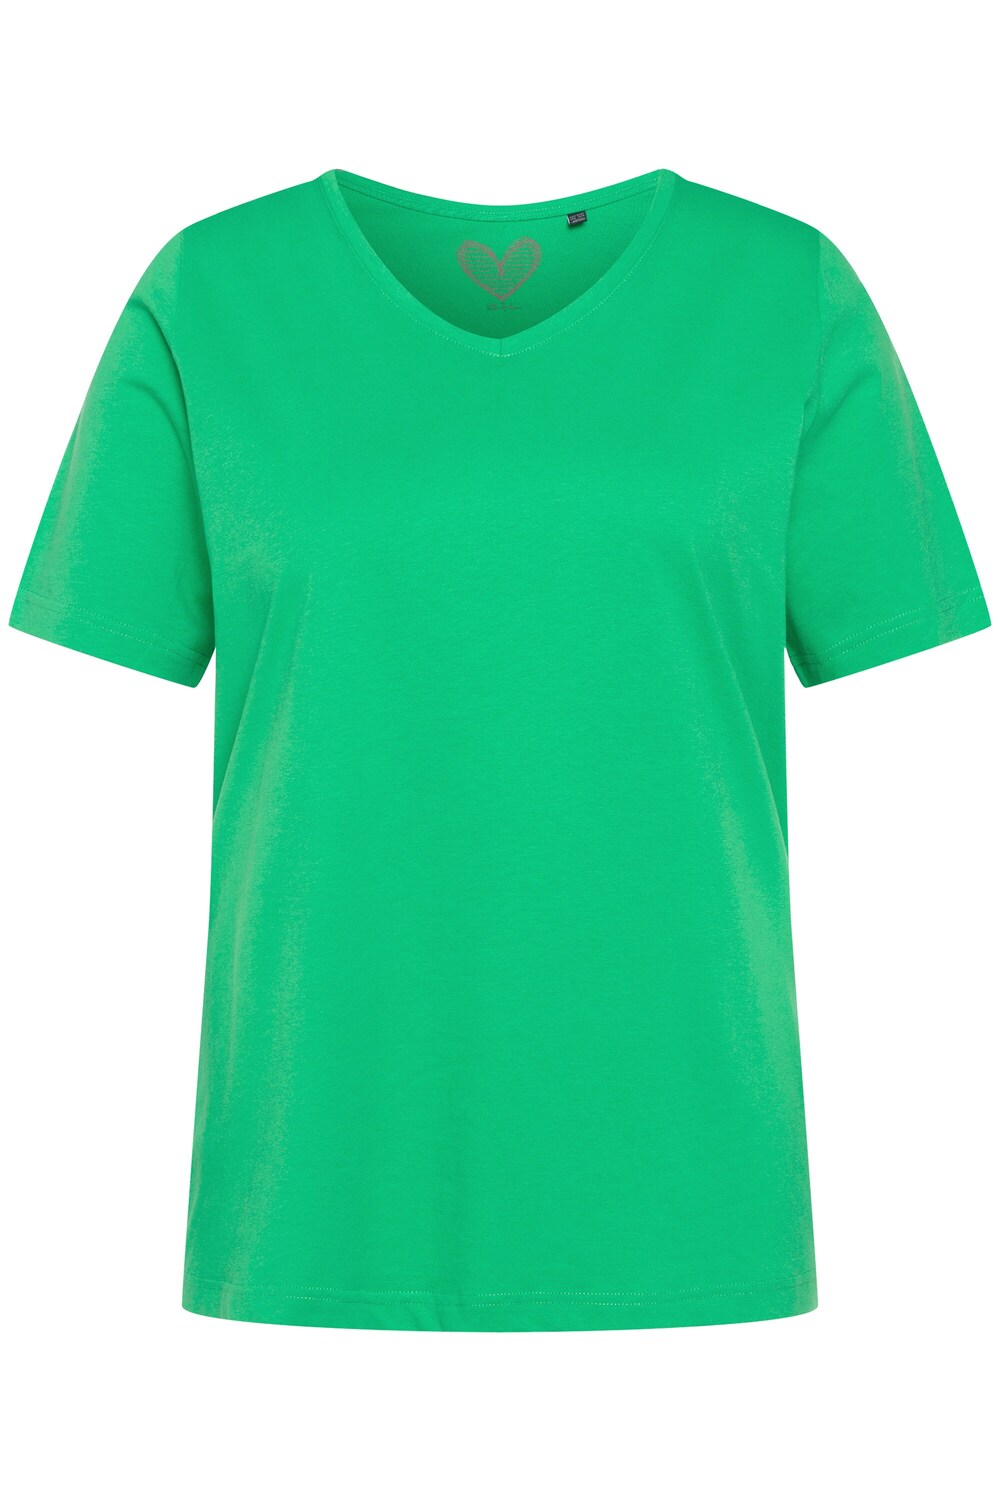 Рубашка Ulla Popken, трава зеленая рубашка yoek трава зеленая